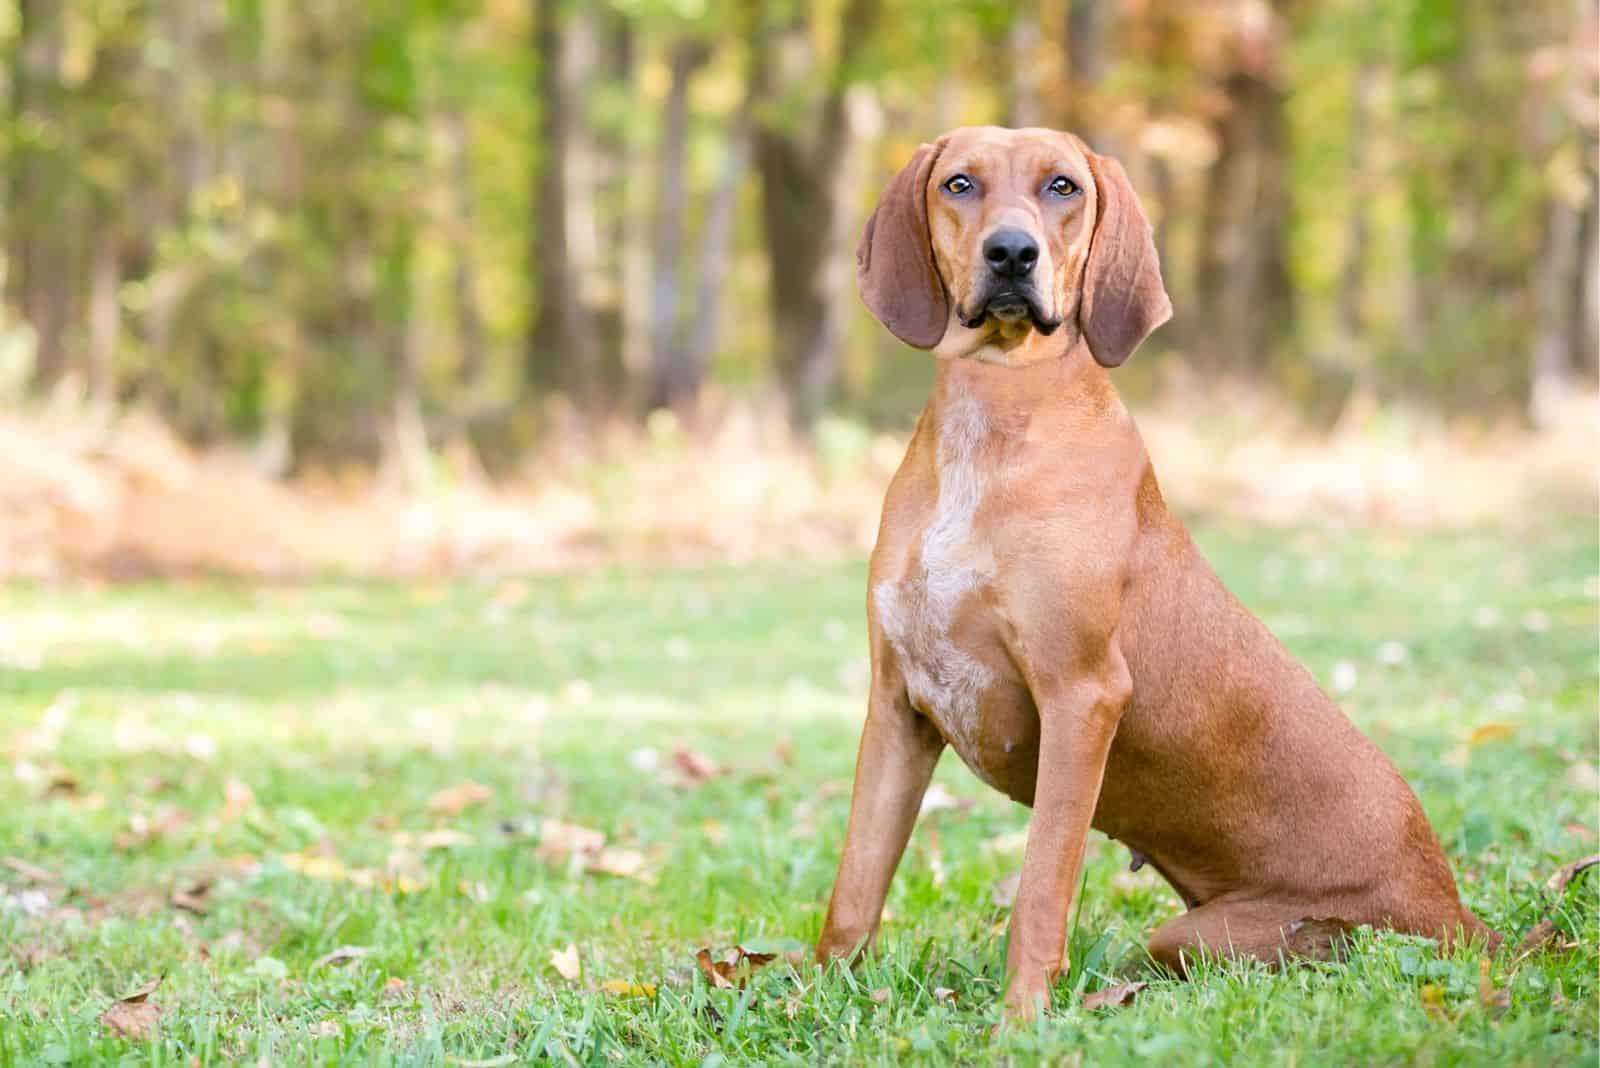 Redbone Coonhound sitting on grass